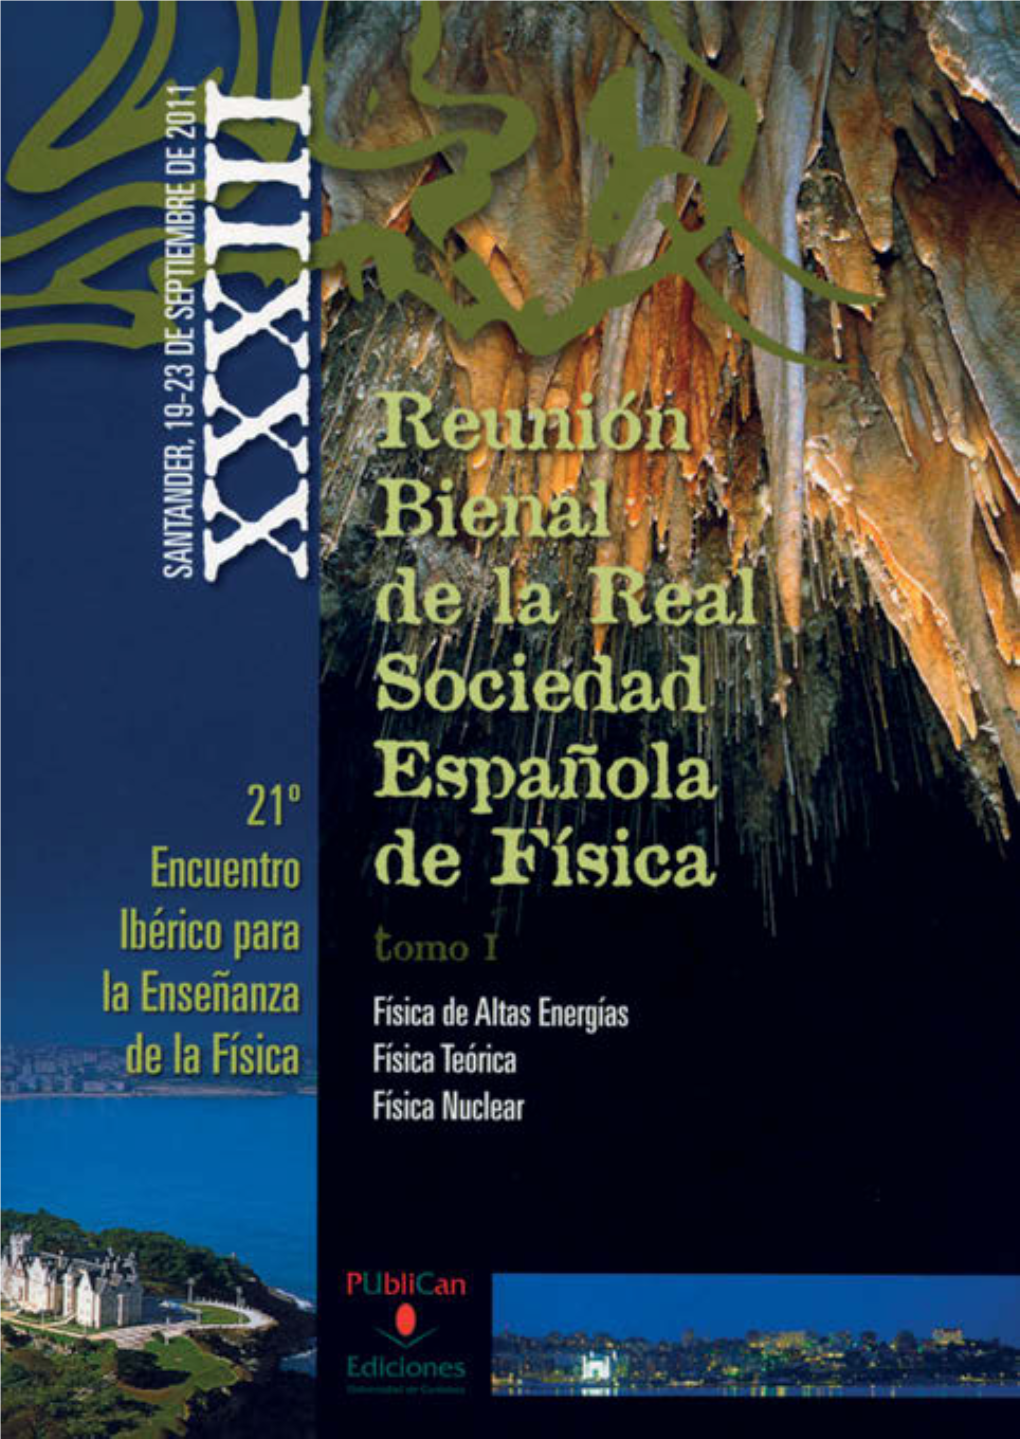 XXXIII Reunión Bienal De La Real Sociedad Española De Física